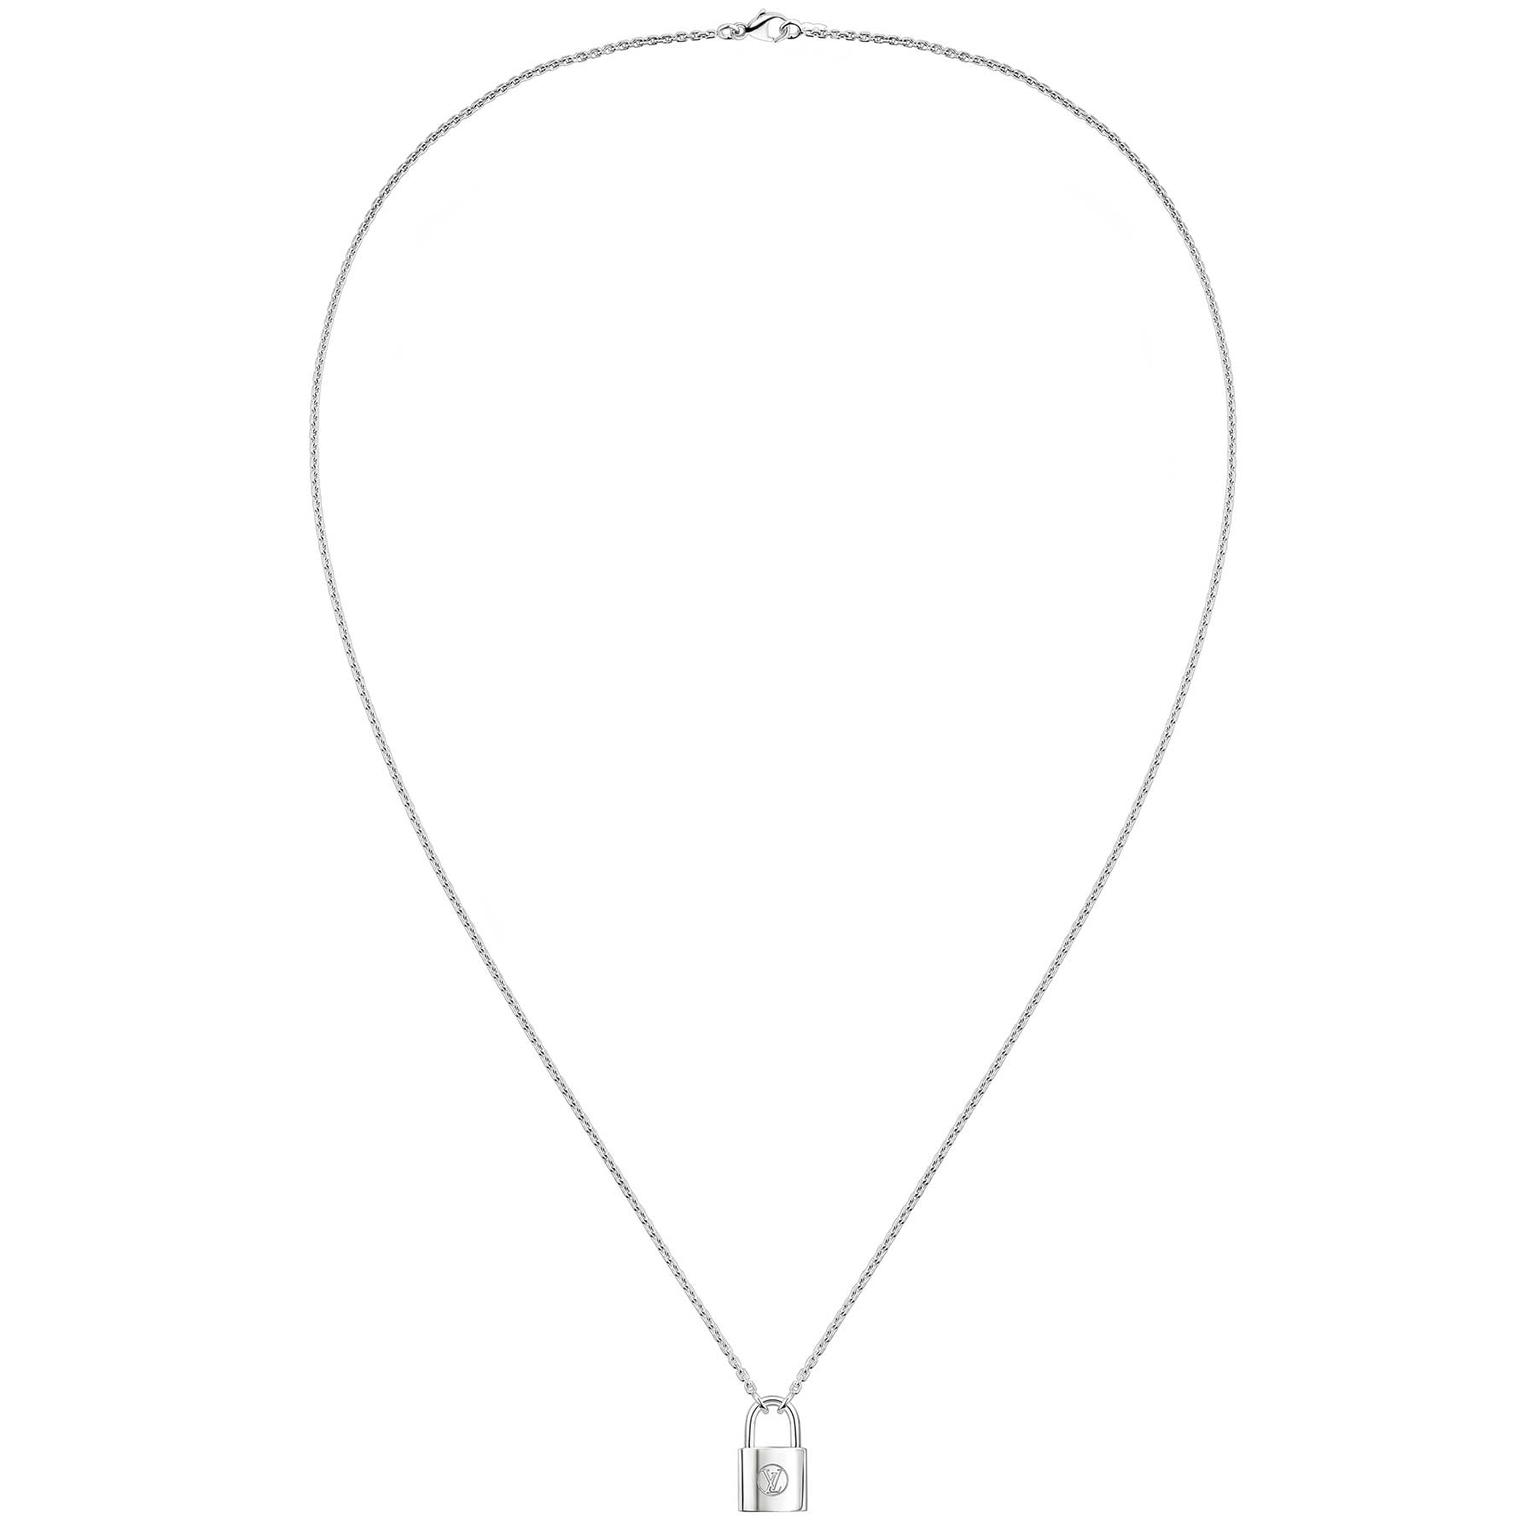 Louis Vuitton Lockit silver necklace